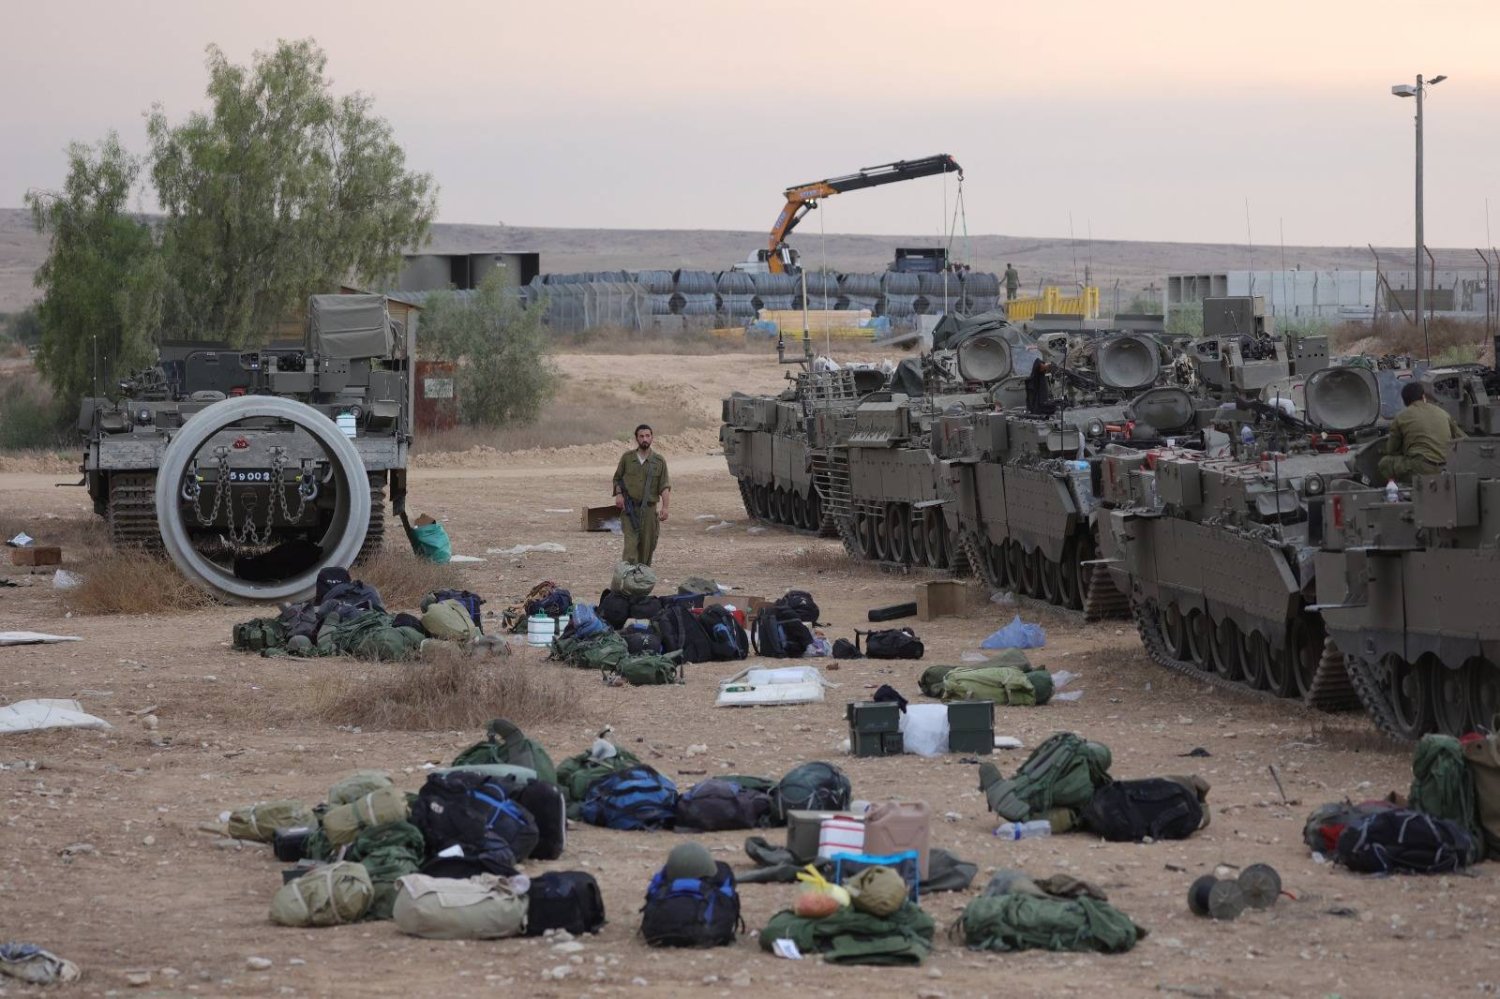 جنود احتياط إسرائيليون يستعدون بجوار ناقلات جنود مدرعة في معسكر للجيش بالقرب من بئر السبع (أرشيفية - إ.ب.أ)